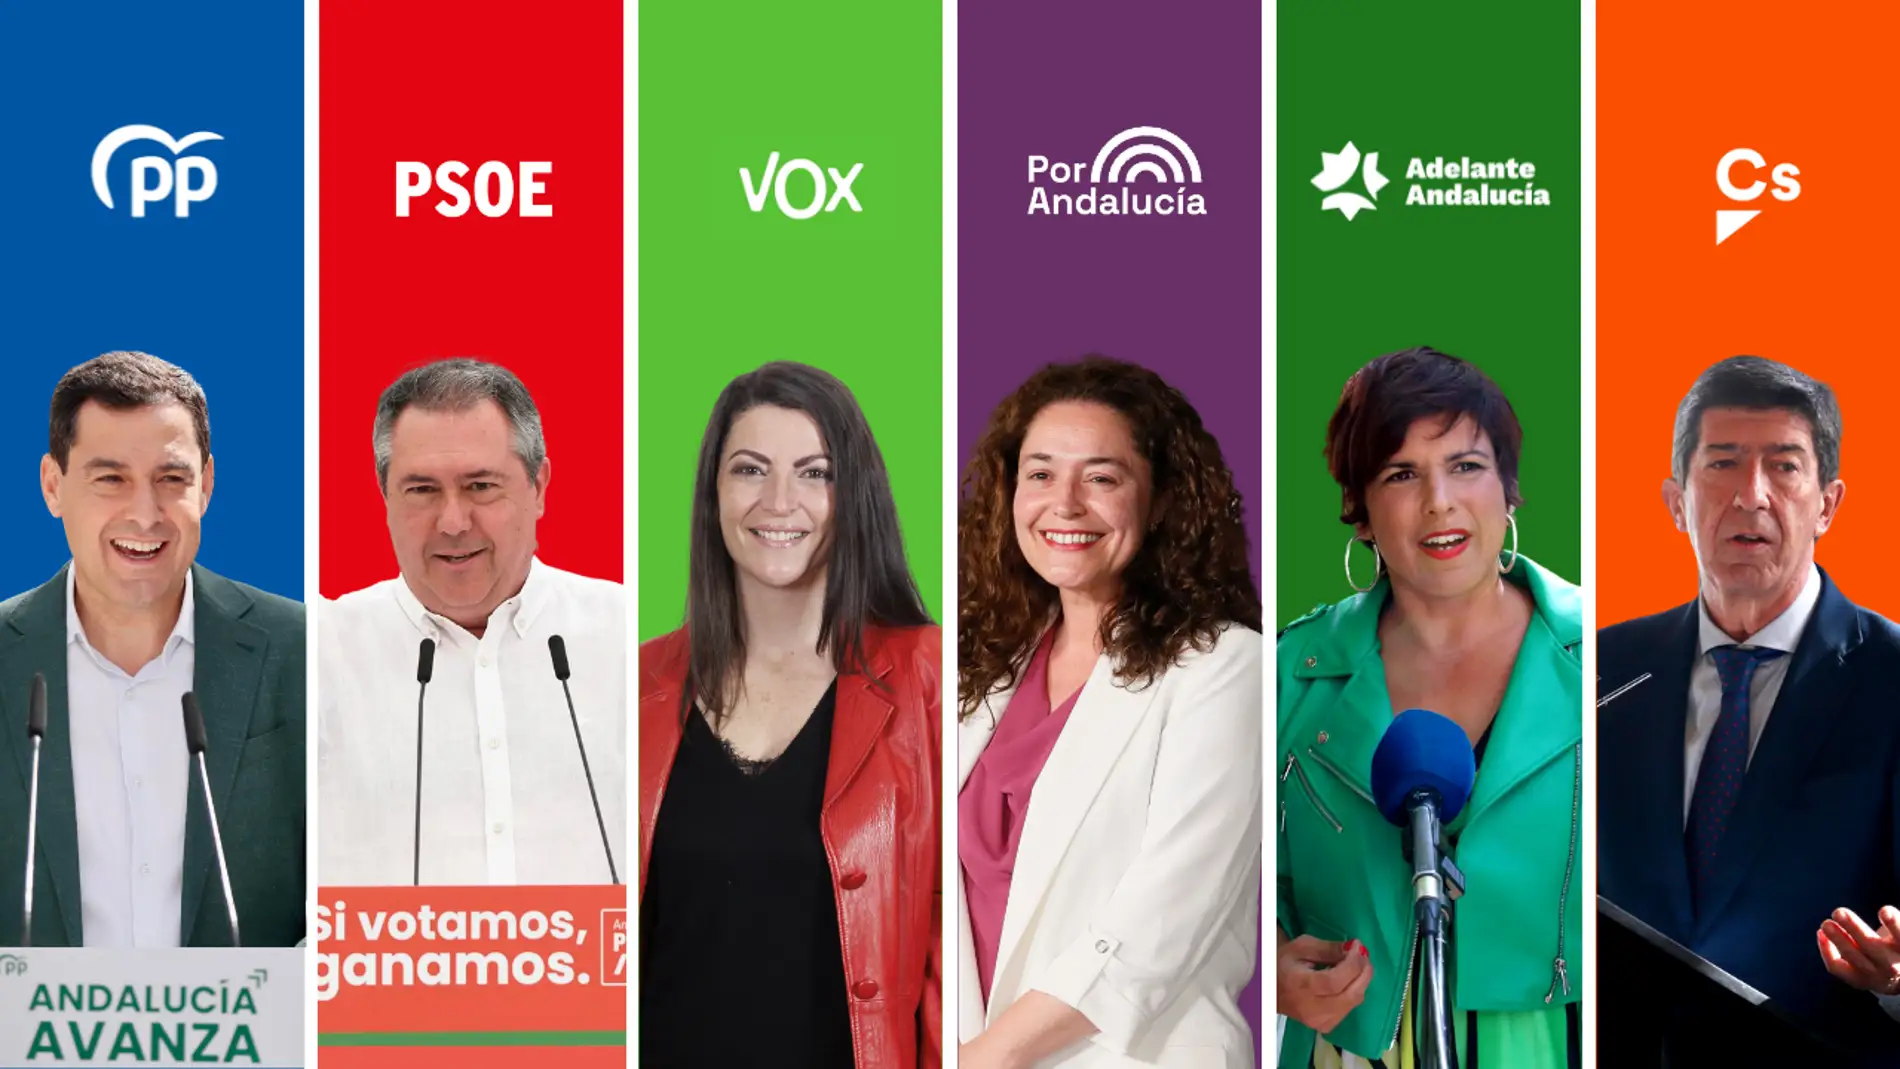 Elecciones Andalucía: cómo ver los programas electorales de cada partido